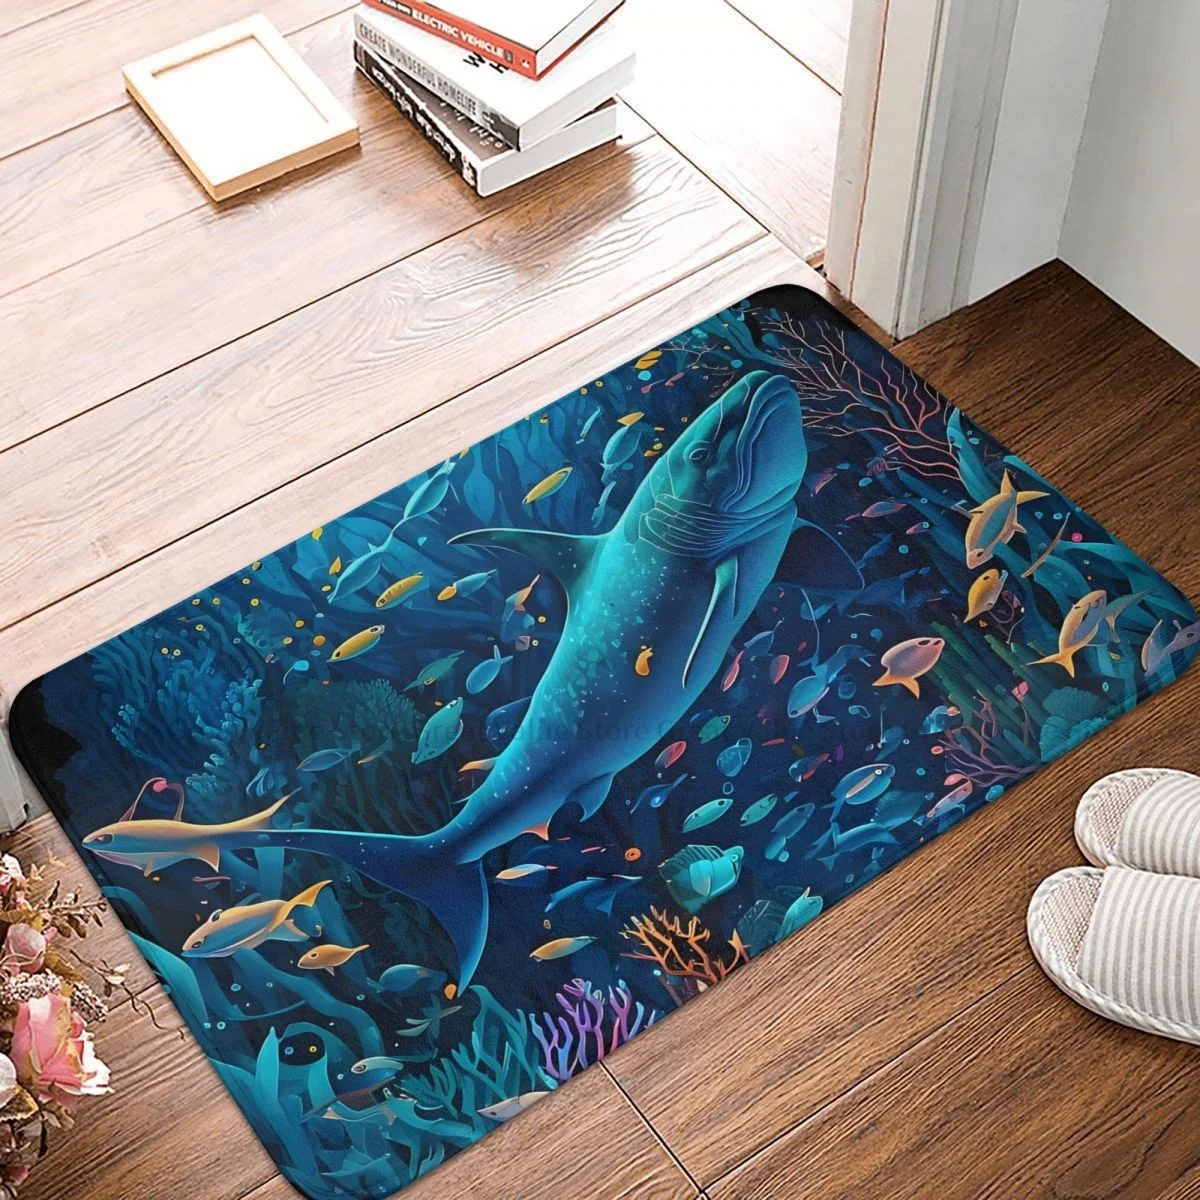 

3D Ocean World Bath Non-Slip Carpet Beautiful Underwater World Bedroom Mat Entrance Door Doormat Floor Decor Rug